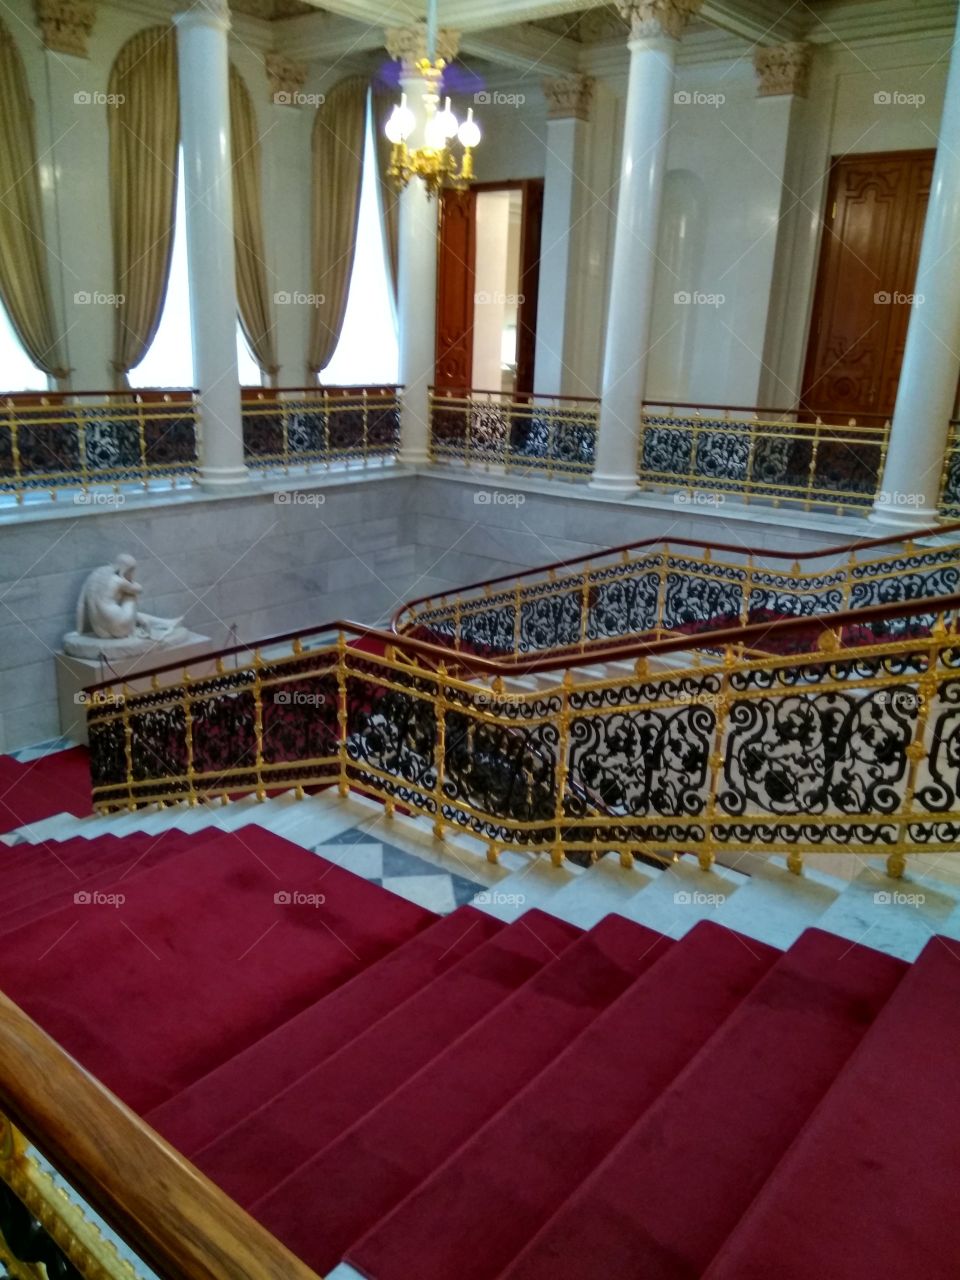 лестница во дворце Санкт Петербург ковровое покрытие парадный вход роскошный интерьер начало экспозиции Фаберже